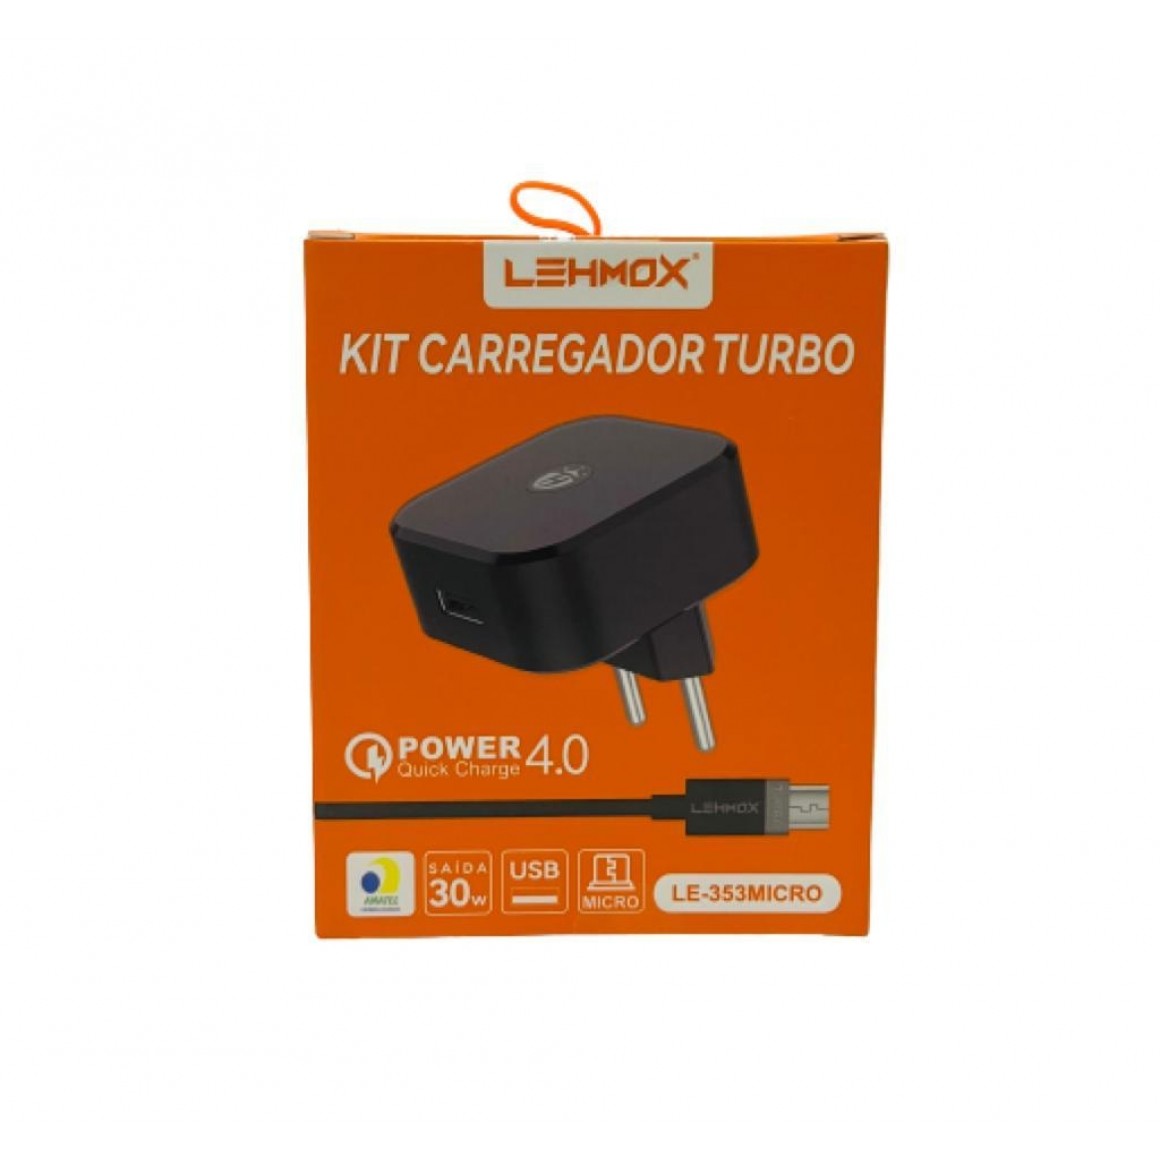 Carregador USB 4.0 - 30W TURBO com 01 Entrada USB + Cabo Micro